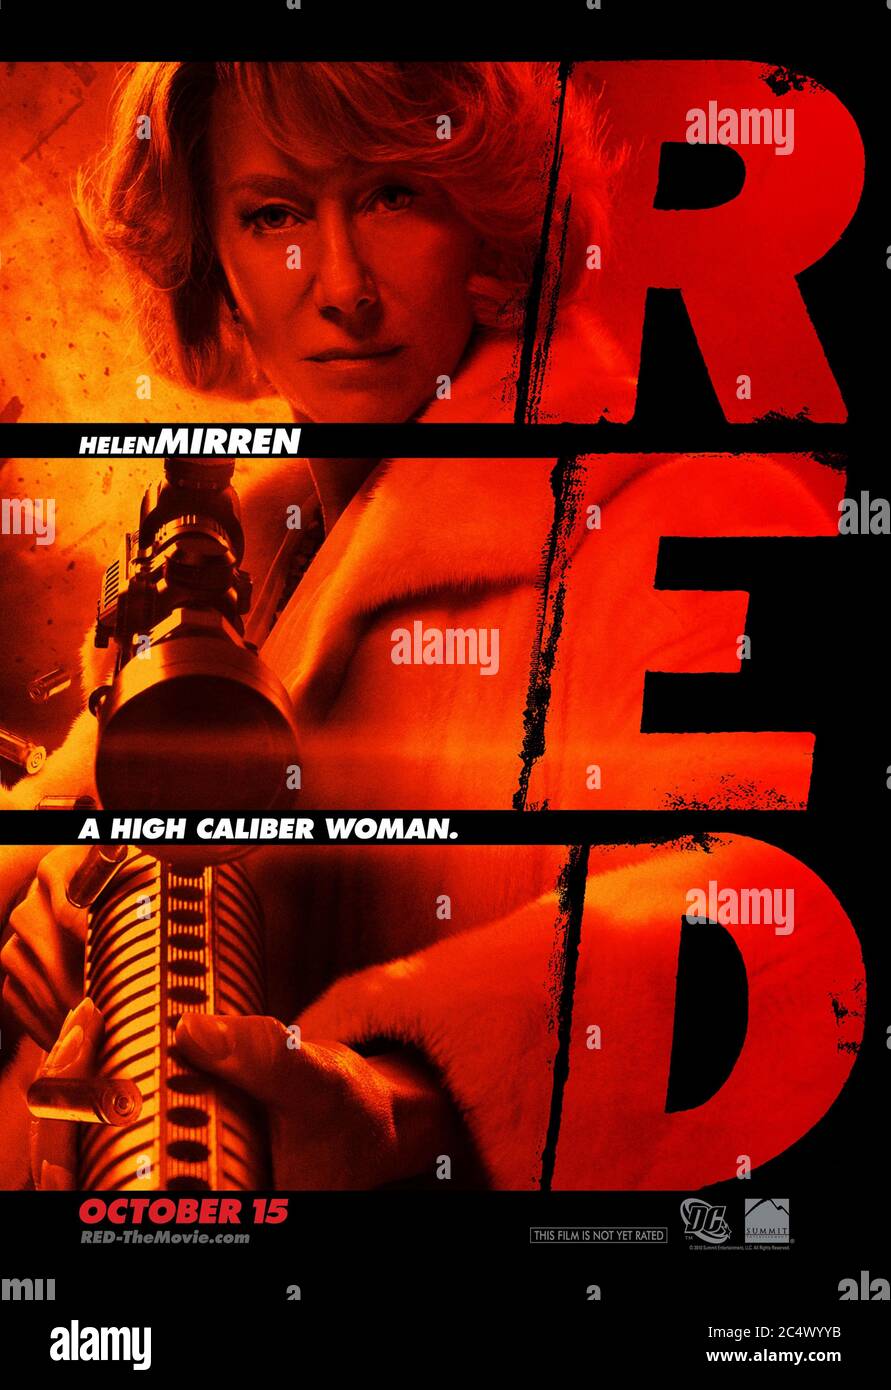 RED (2010) Regie: Robert Schwentke und mit Helen Miren als Victoria, die 'R.E.D.' ist - Ruhestand extrem gefährlich, basierend auf dem DC Comic Buch. Stockfoto